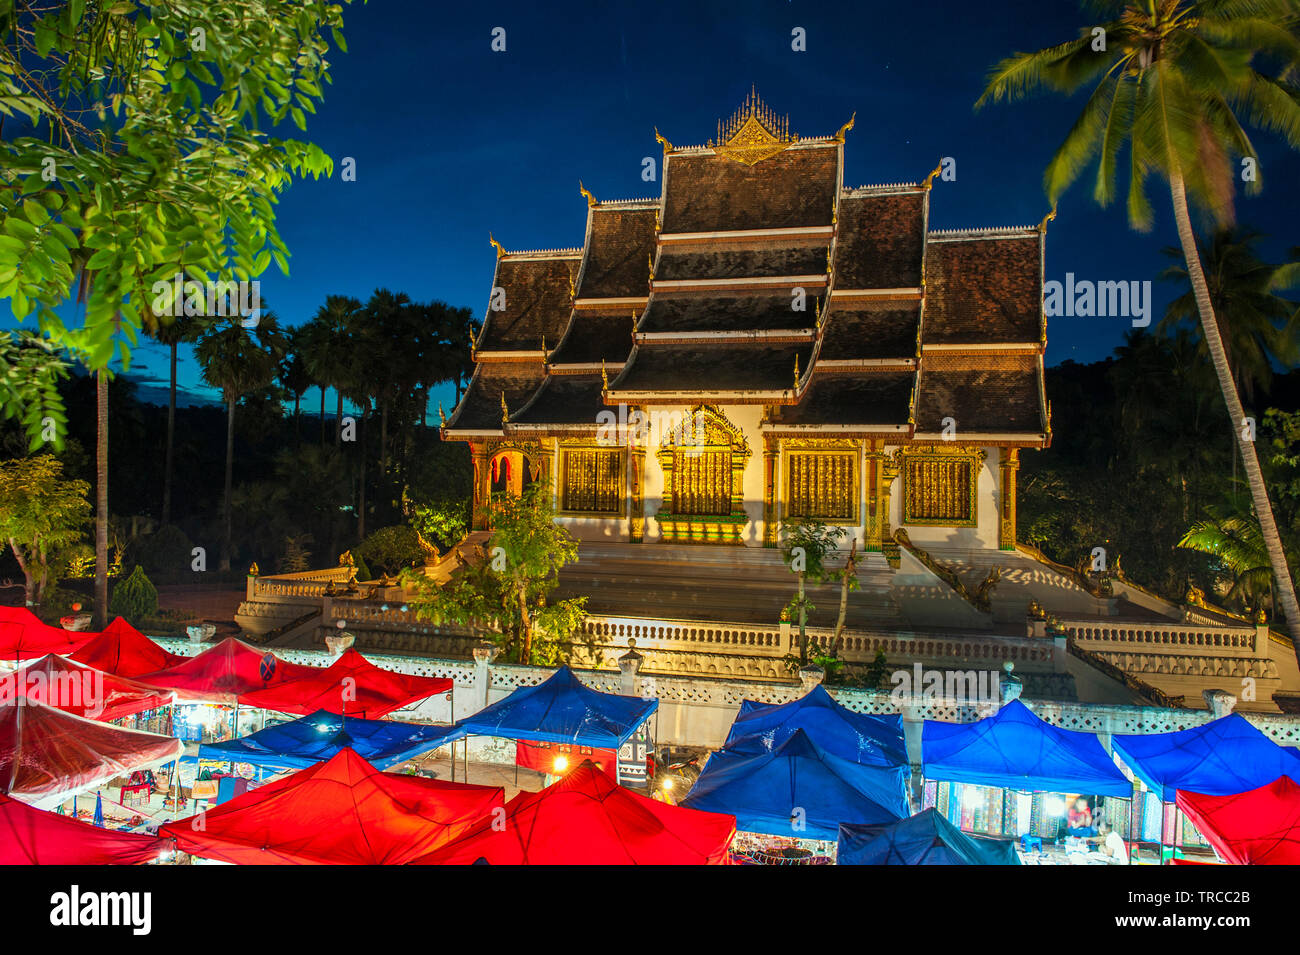 El mercado nocturno de Hmong con Haw Pha Bang templo en el fondo en el centro de Luang Prabang, una ciudad declarada Patrimonio de la humanidad en la República Democrática Popular Lao. Foto de stock